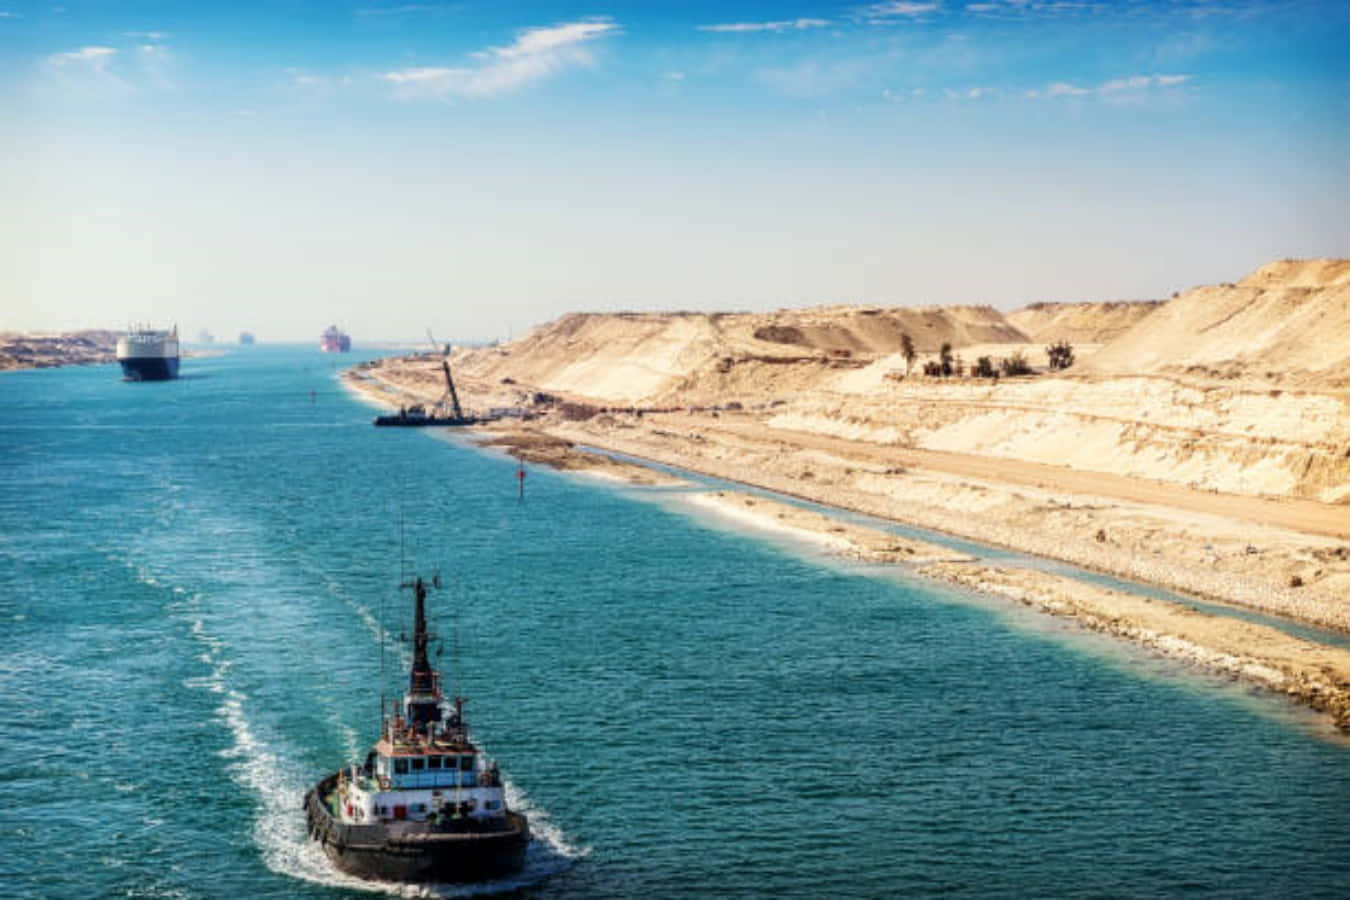 Barcospasando Por El Canal De Suez, Una Ruta Comercial Vital Que Conecta El Mar Mediterráneo Con El Mar Rojo.